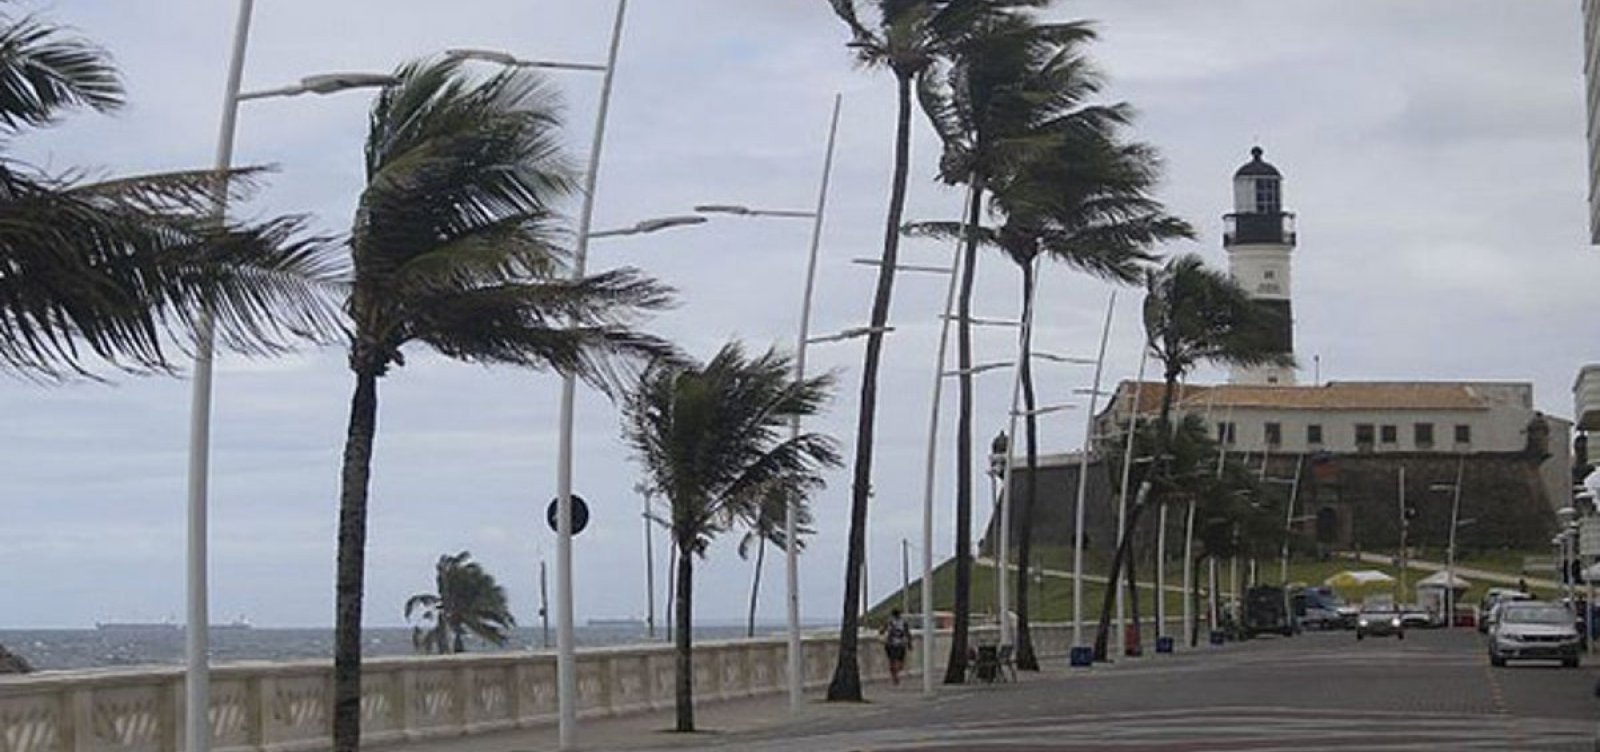 Marinha emite alerta de ressaca para litoral da Bahia; ondas podem chegar a 2,5 metros de altura